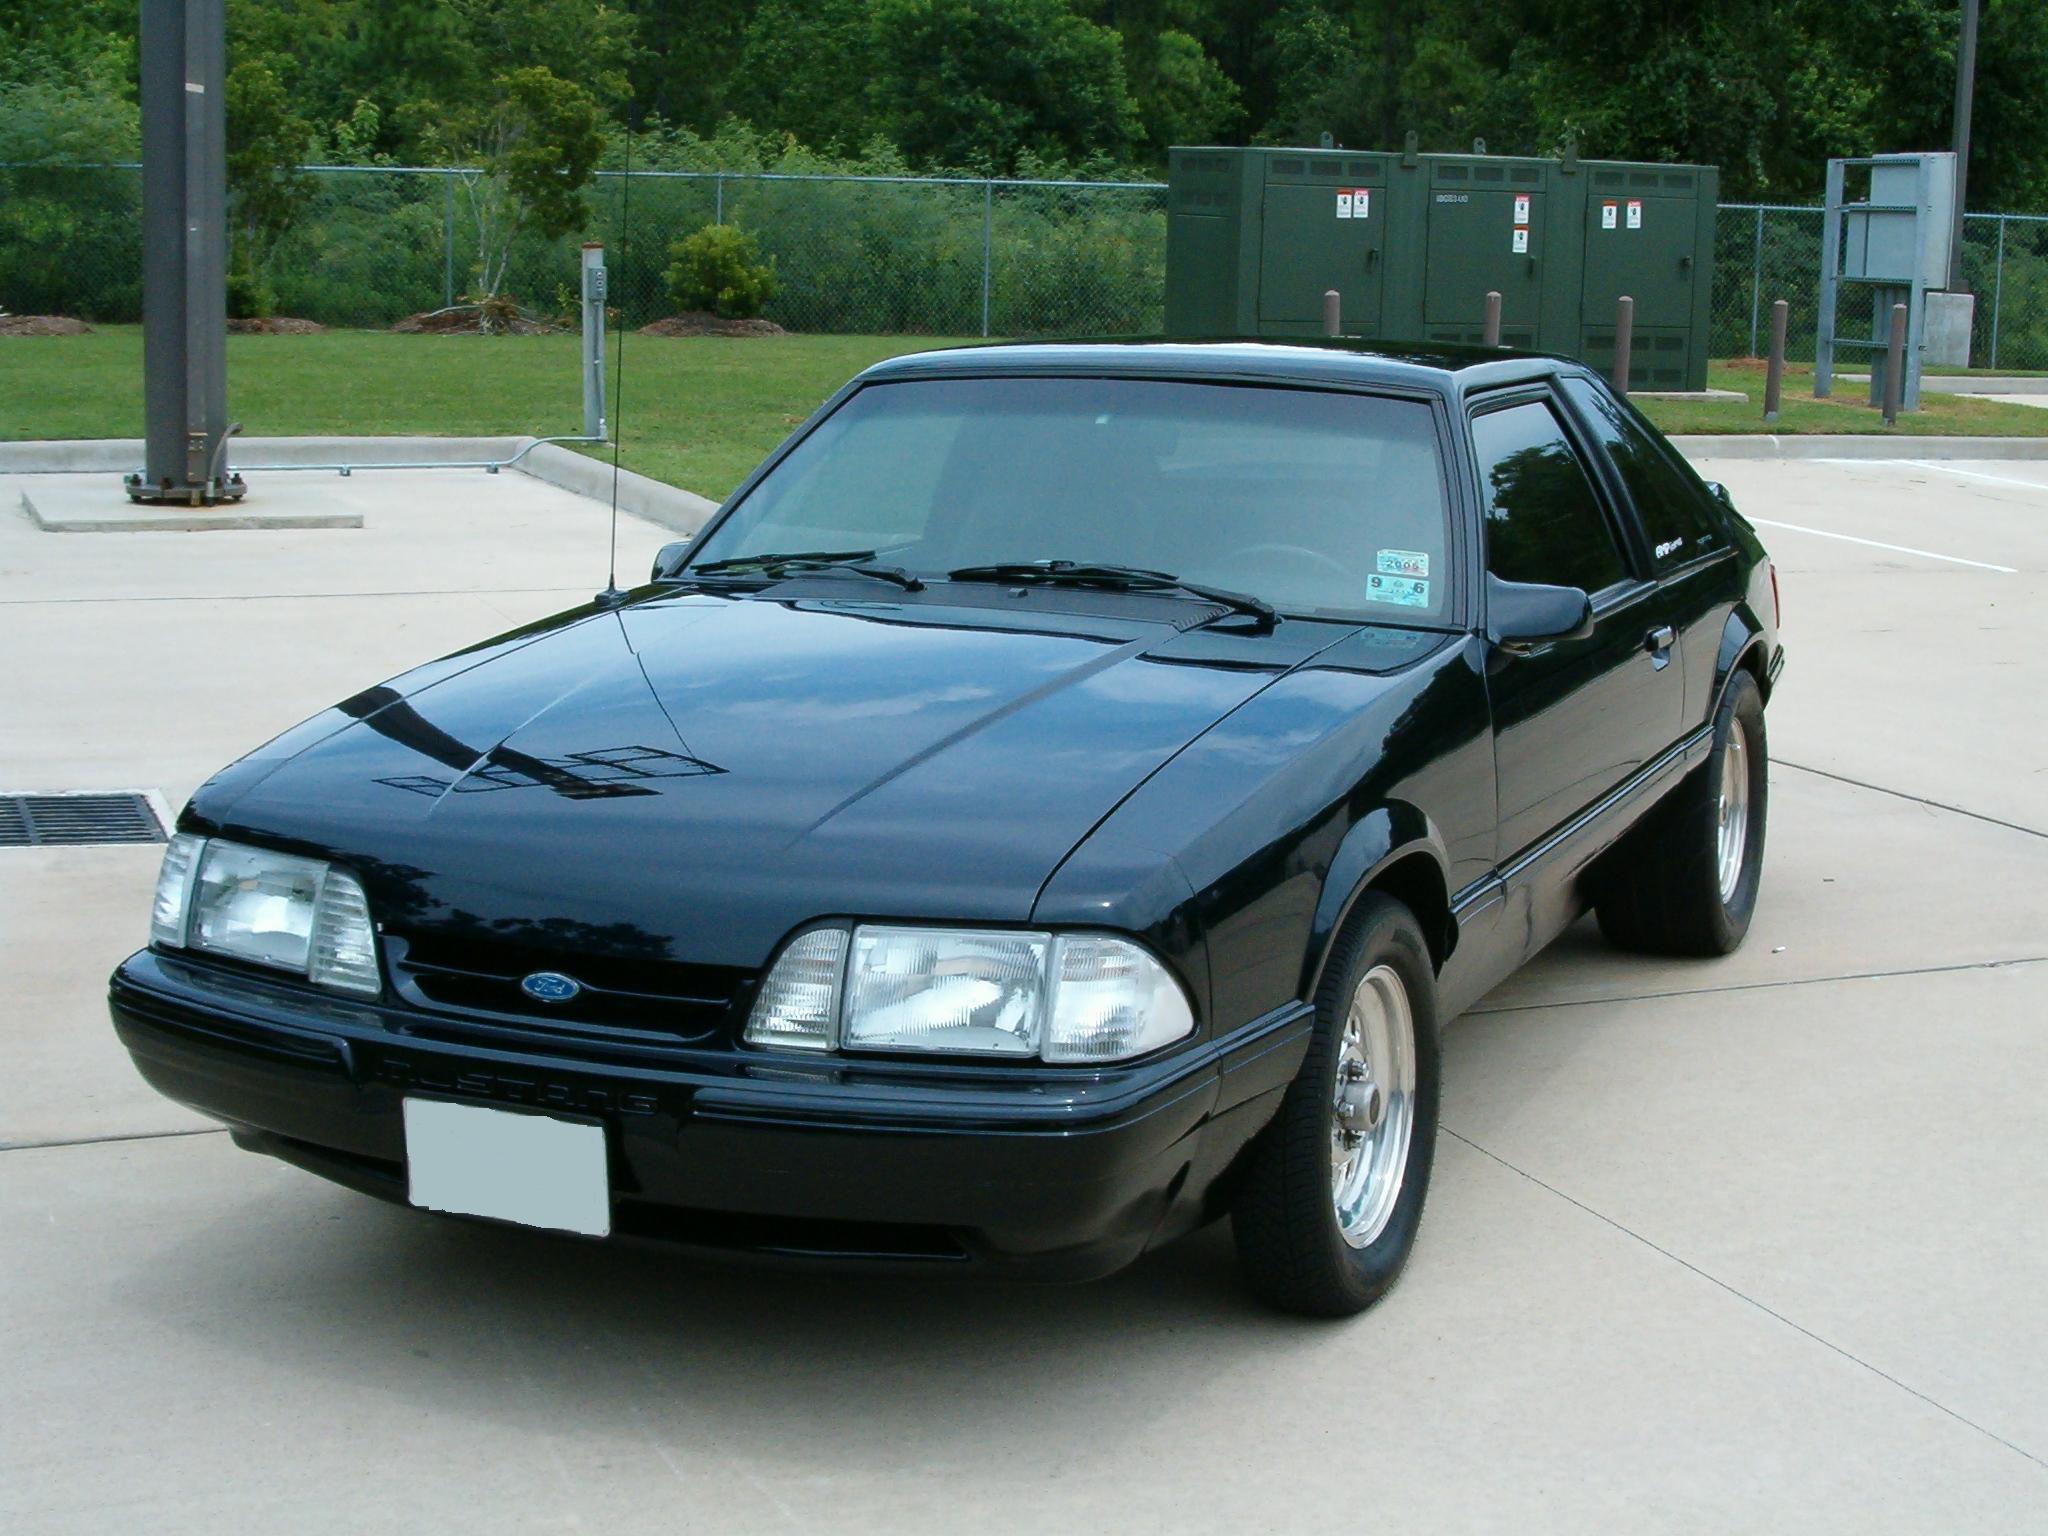 1989 Ford mustang hatchback sale